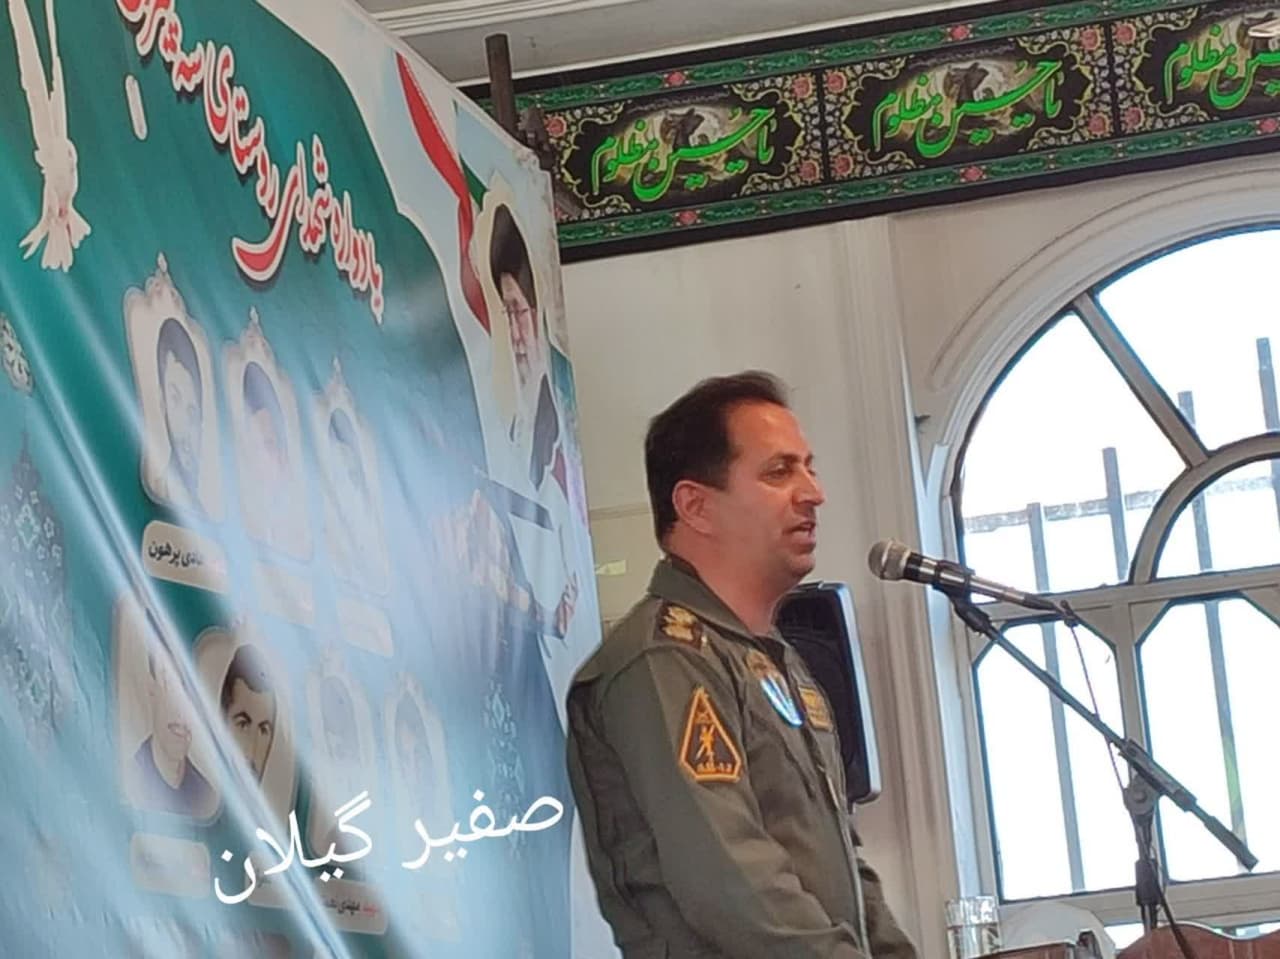 رحمانی؛سرود ملی ایران نماد شکوه همبستگی ملت است به احترامش ۵۸ ثانیه بایستیم/به جای گله و شکایت و کشور را سربازگونه درست کنیم